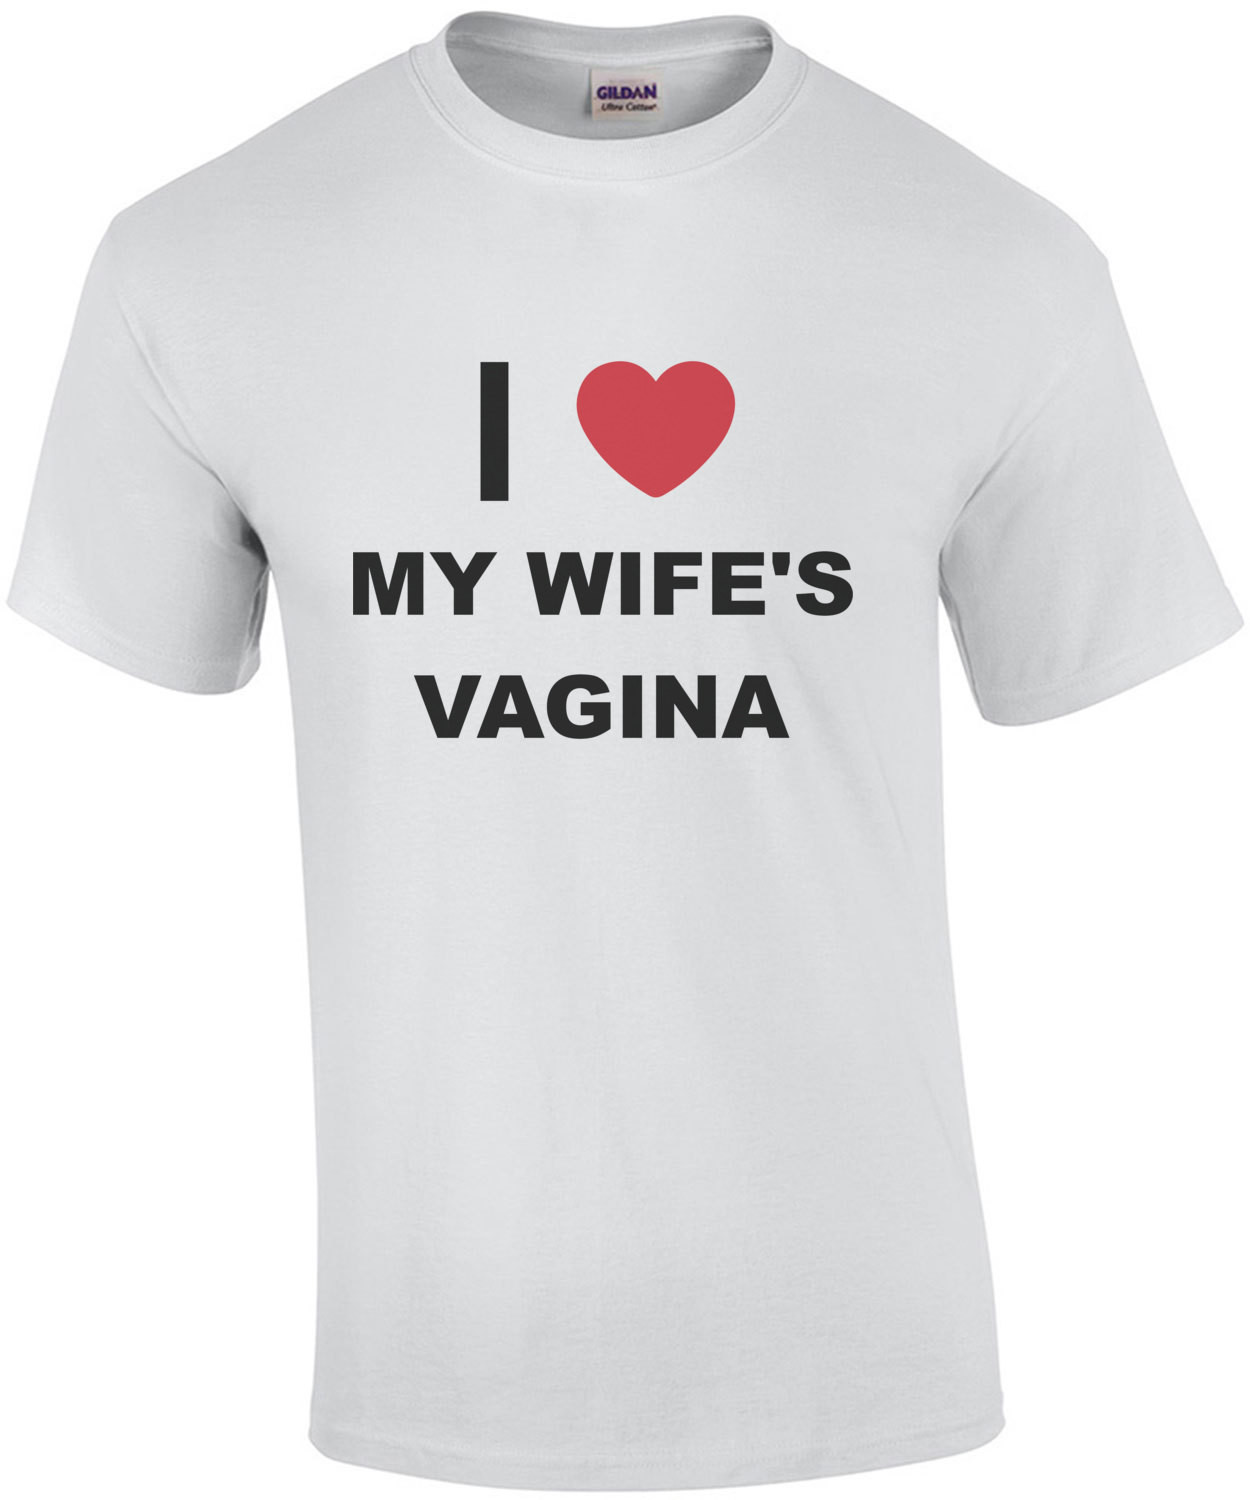 I love my wife's vagina - funny t-shirt